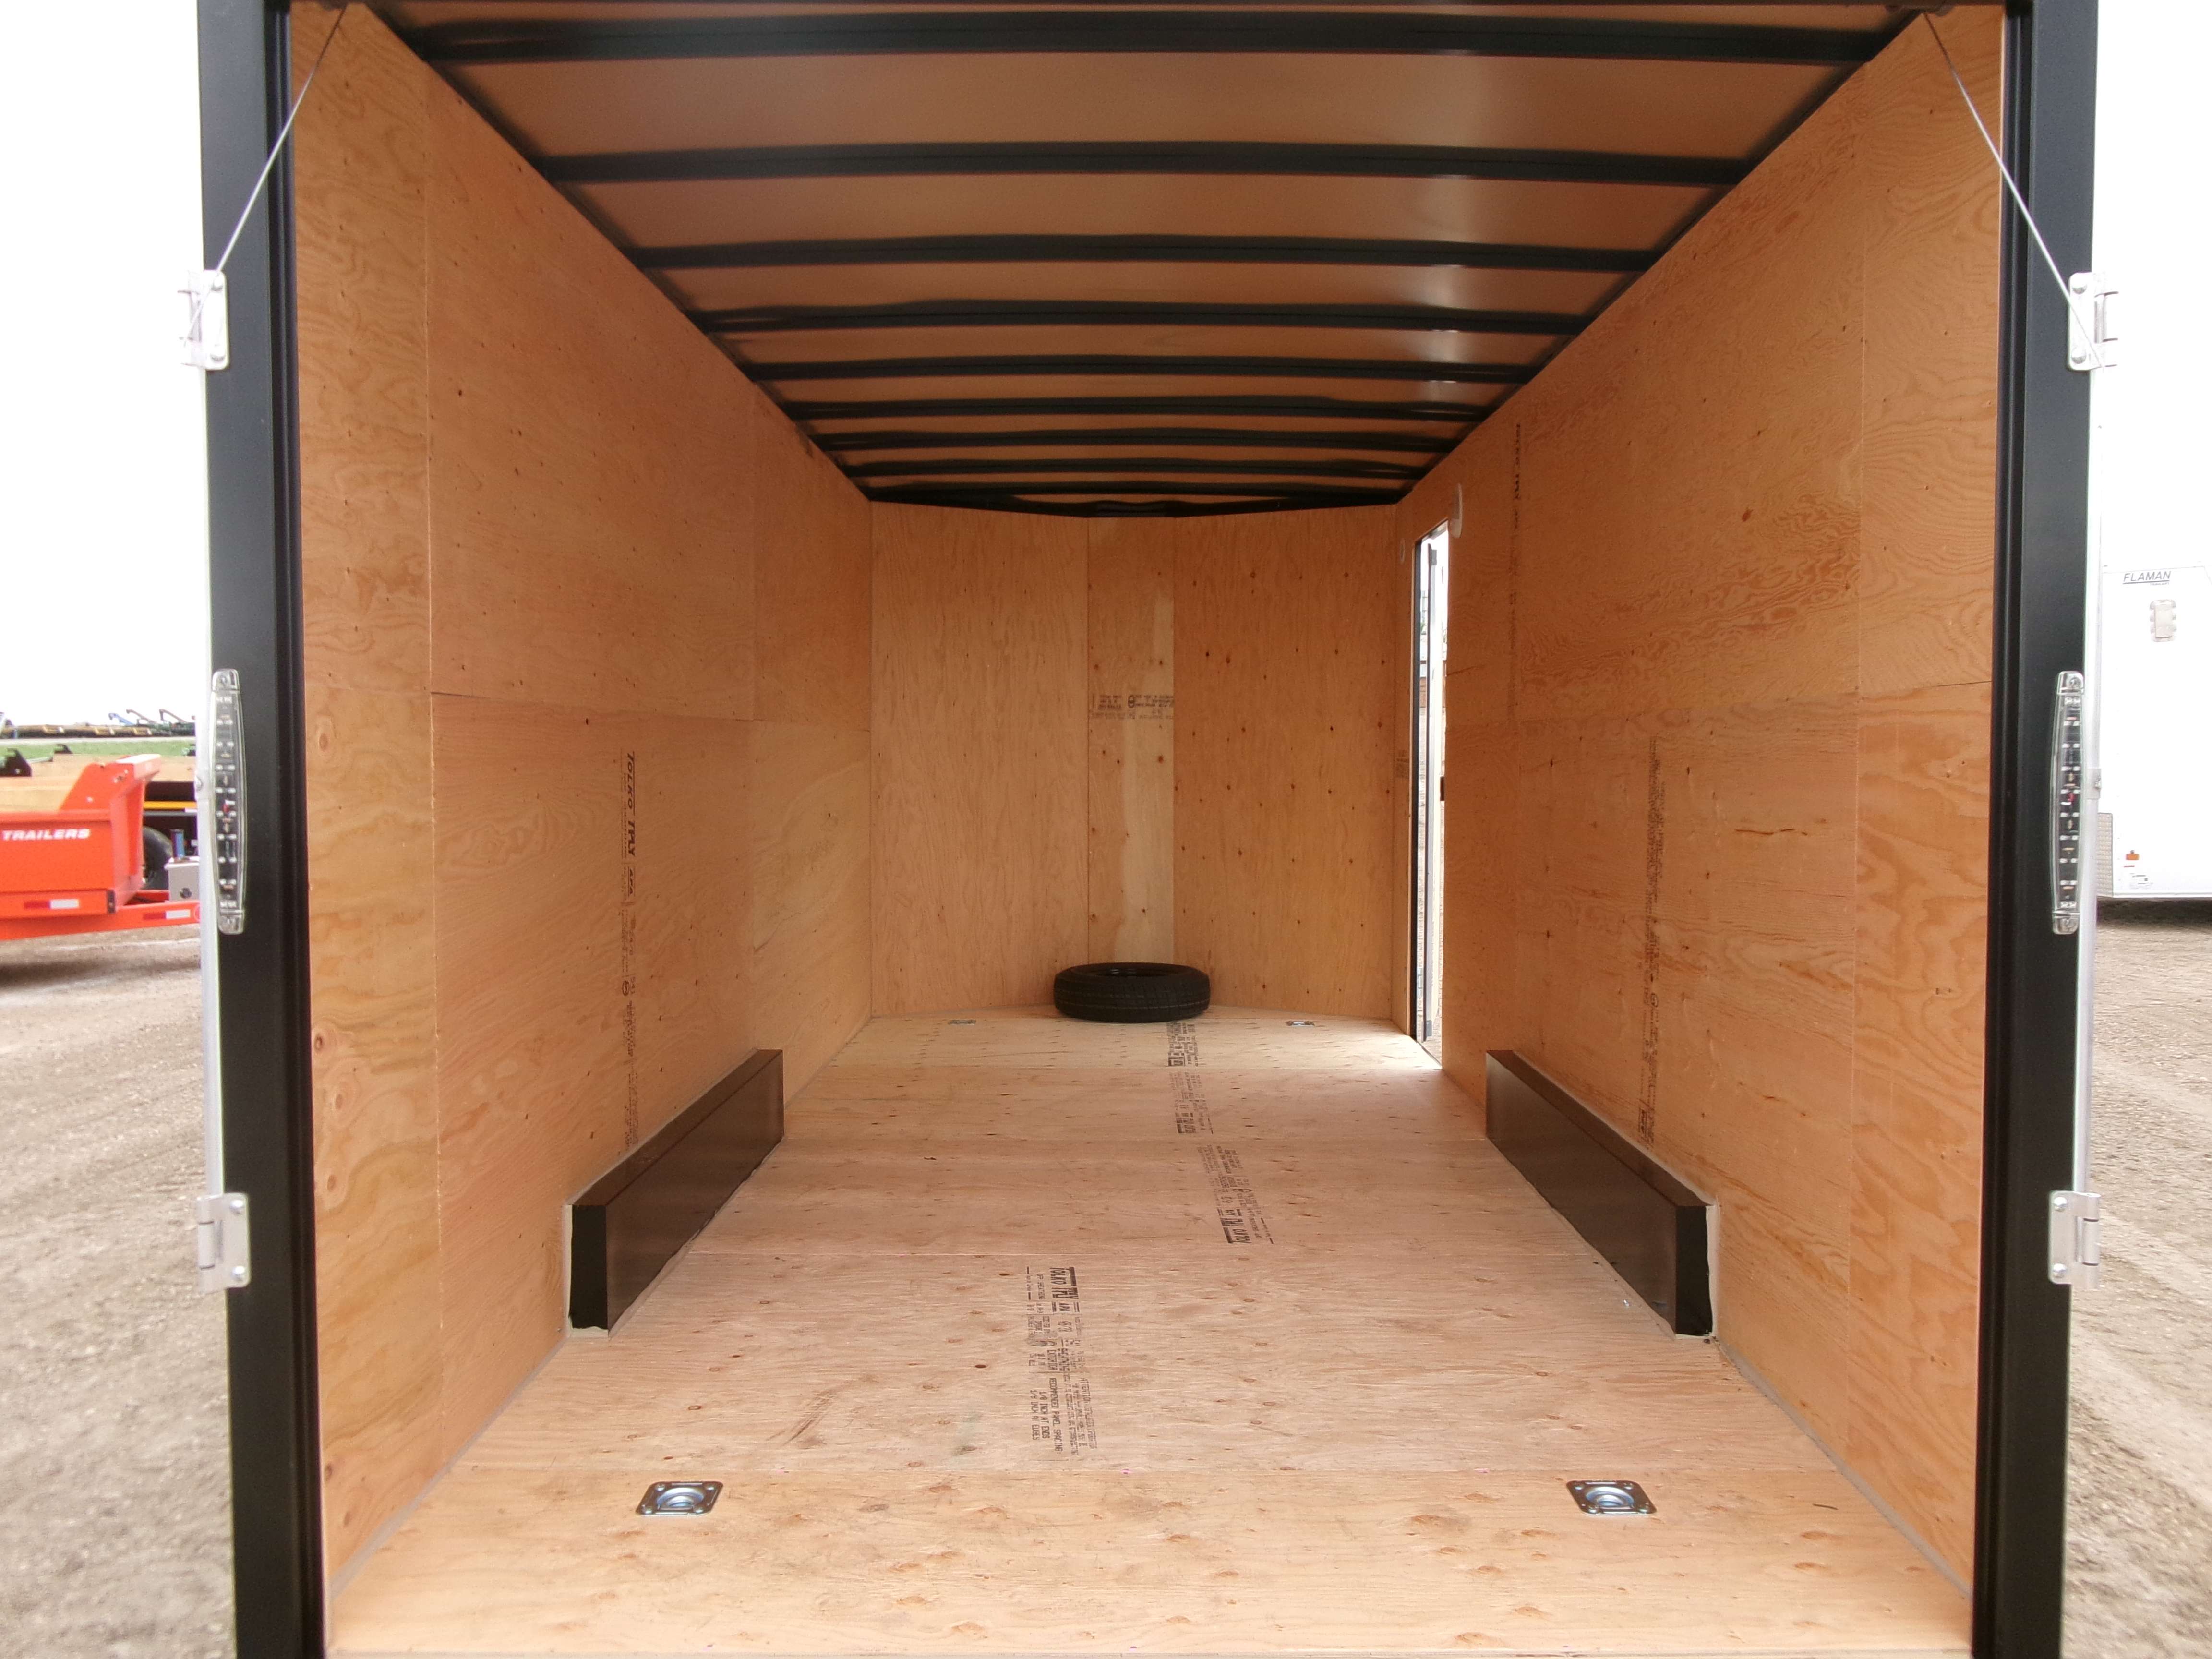 Royal 18' Enclosed Cargo Trailer